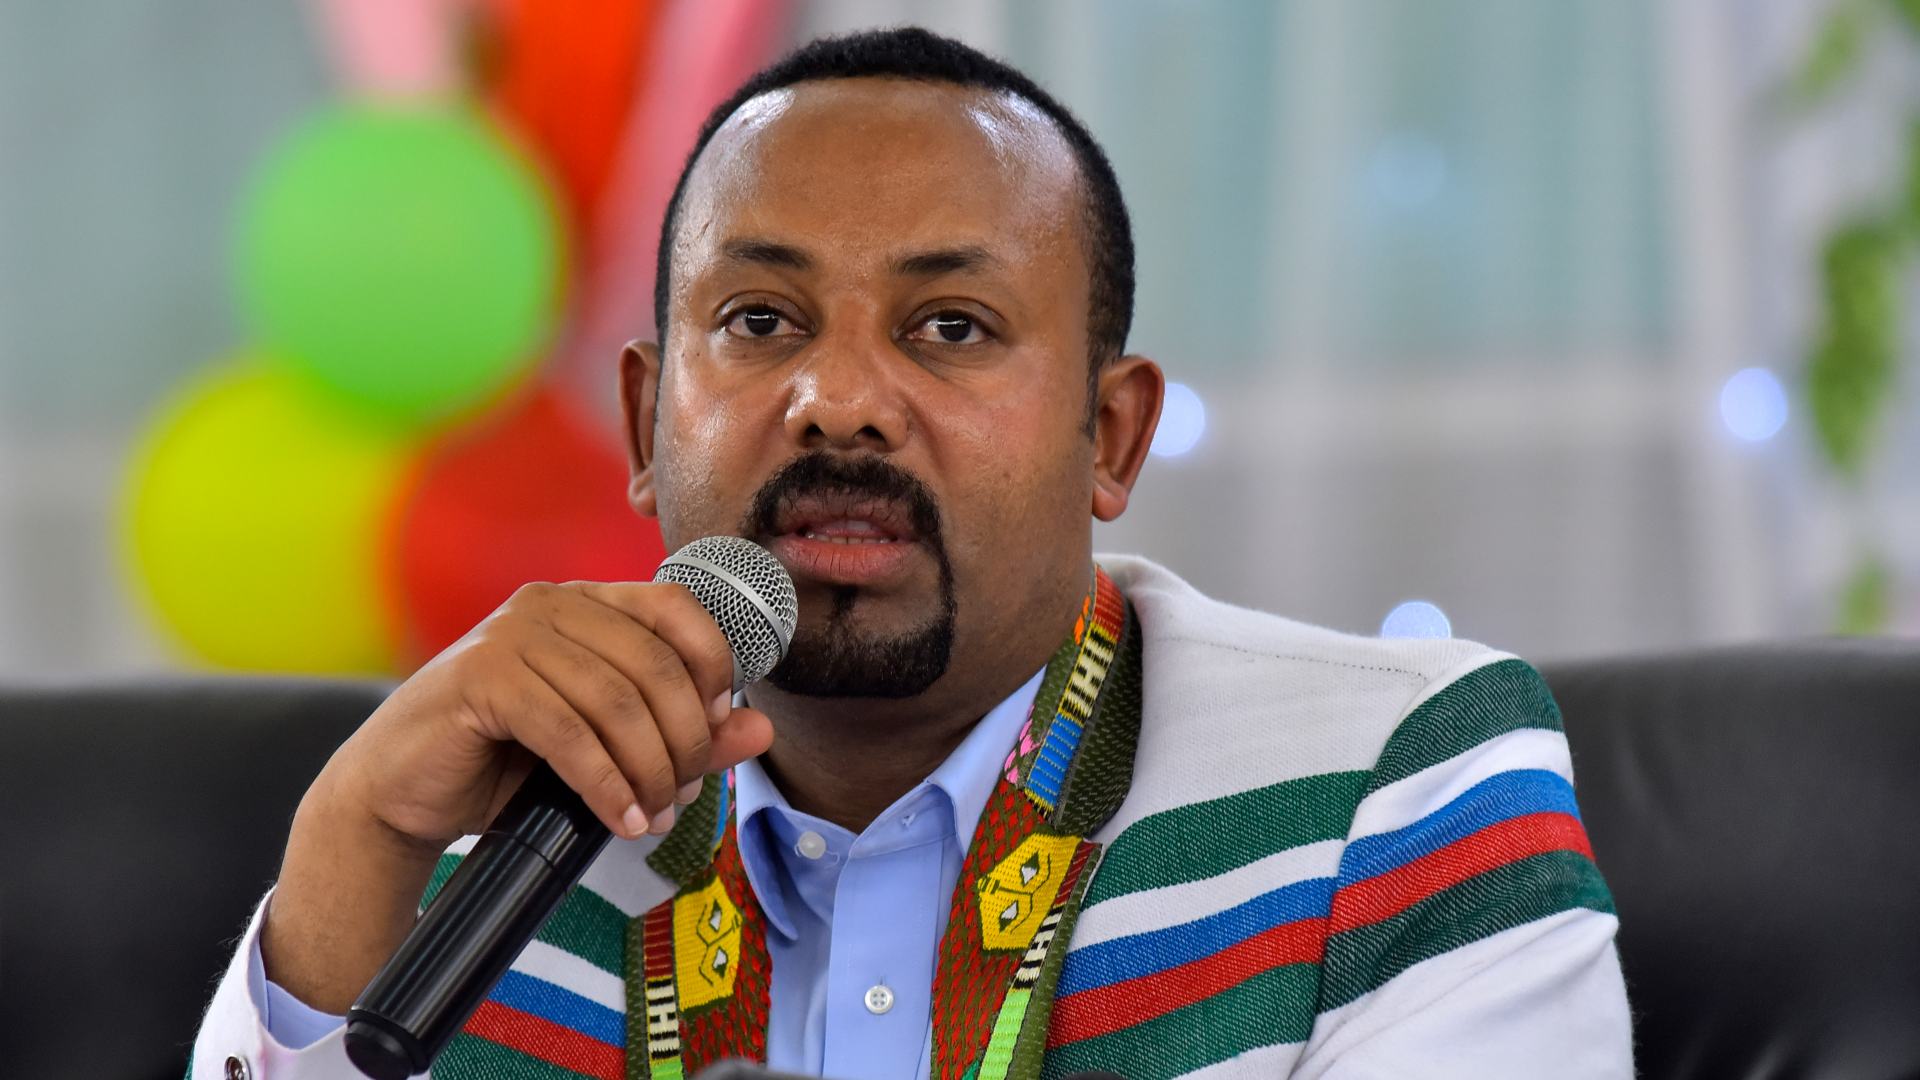 El Premio Nobel de la Paz es para el primer ministro de Etiopía